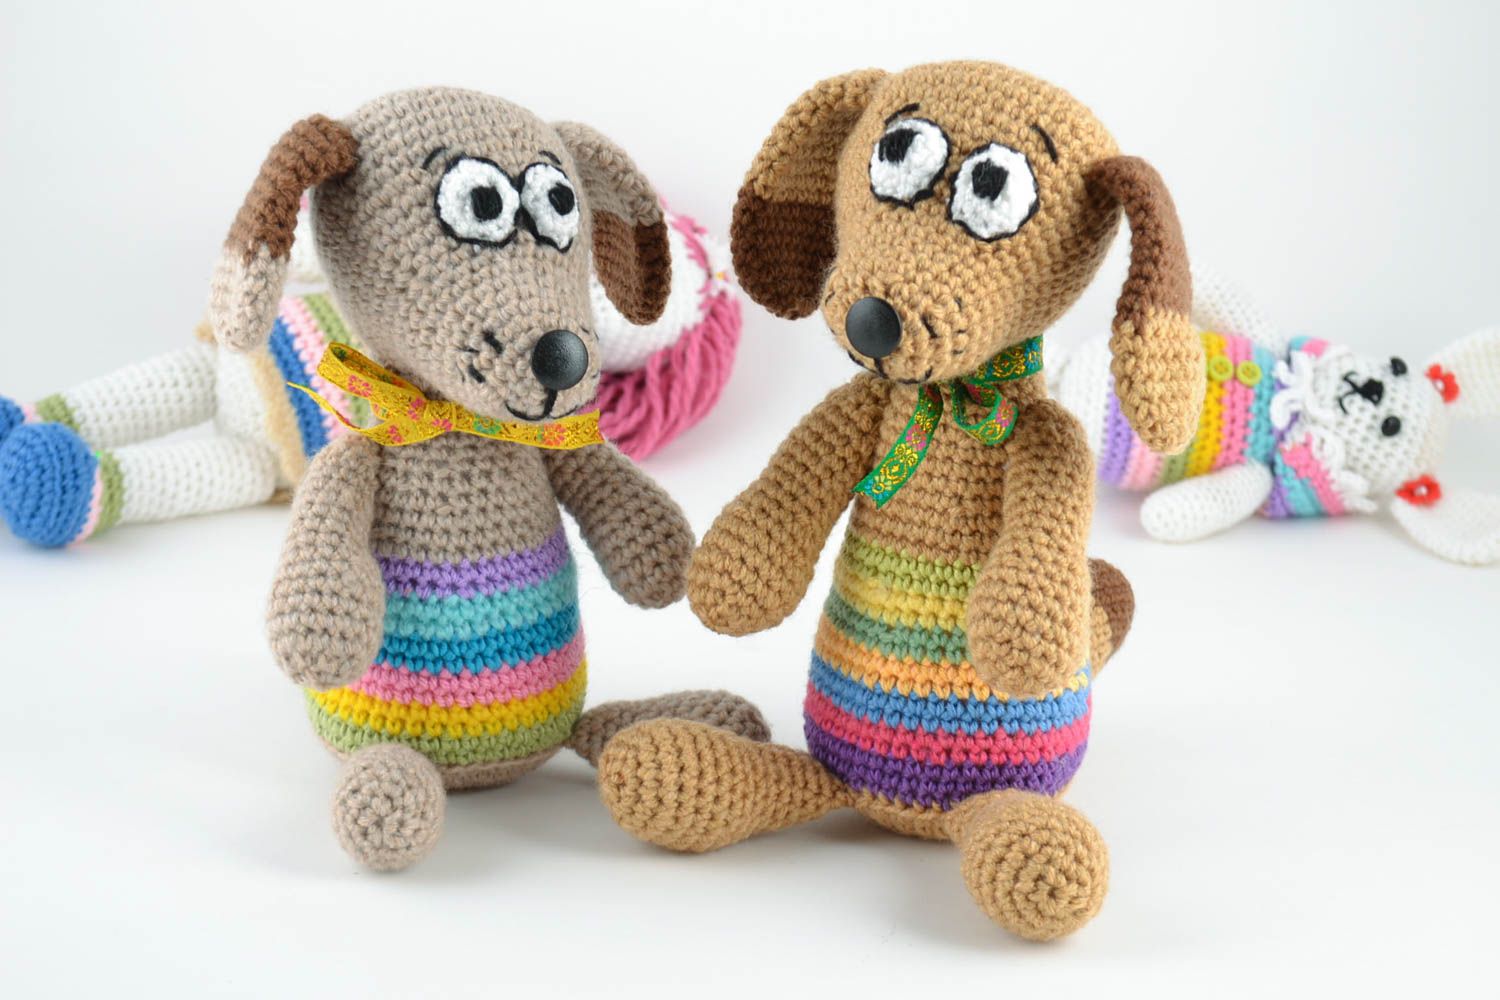 Мягкие вязаные игрушки две собачки набор из шерсти и полушерсти ручной работы фото 1